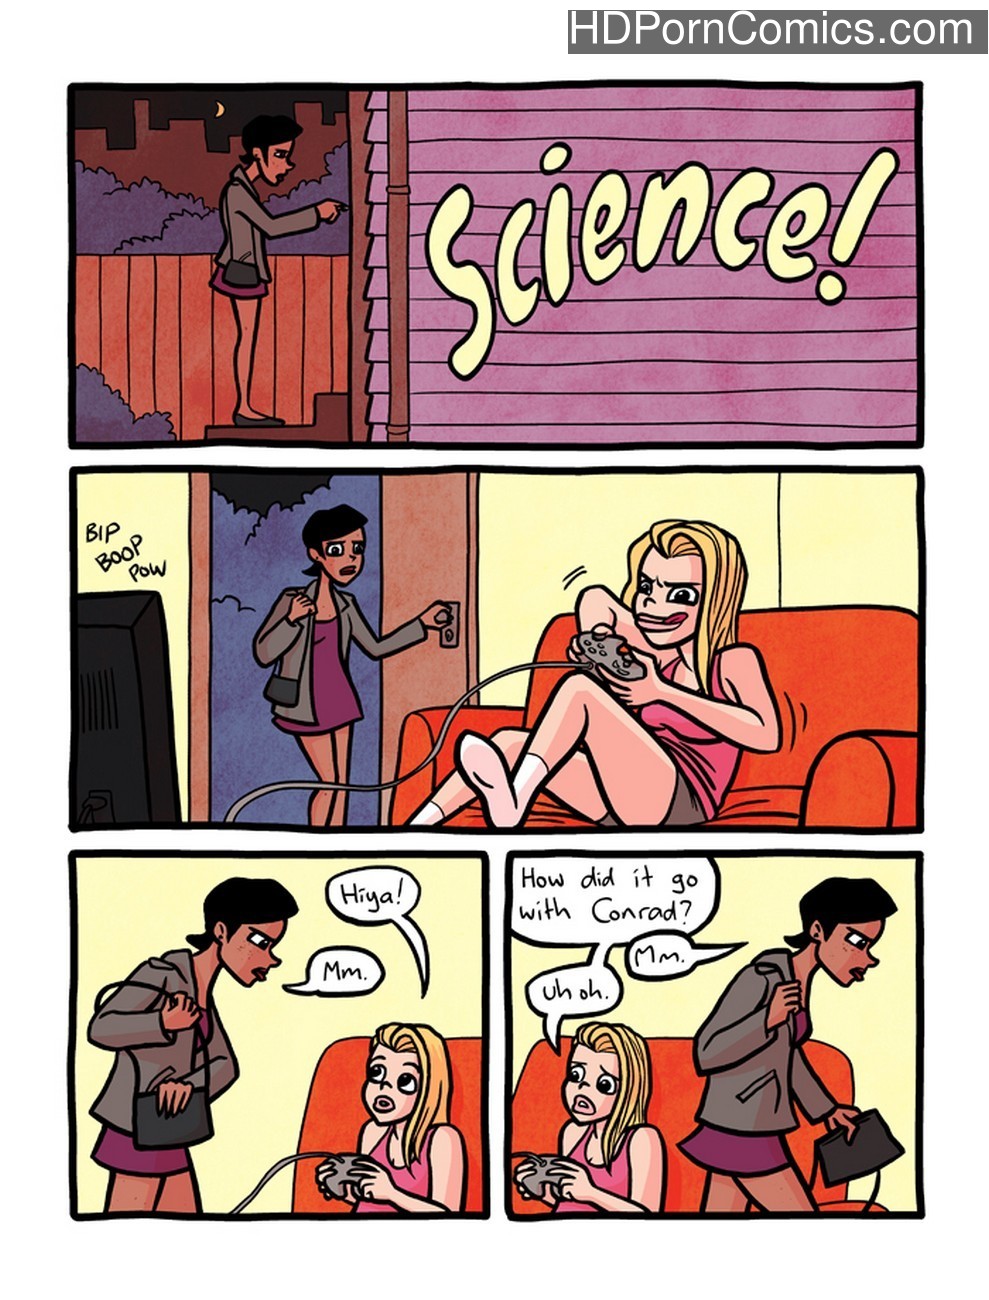 Science! Sex Comic - HD Porn Comics